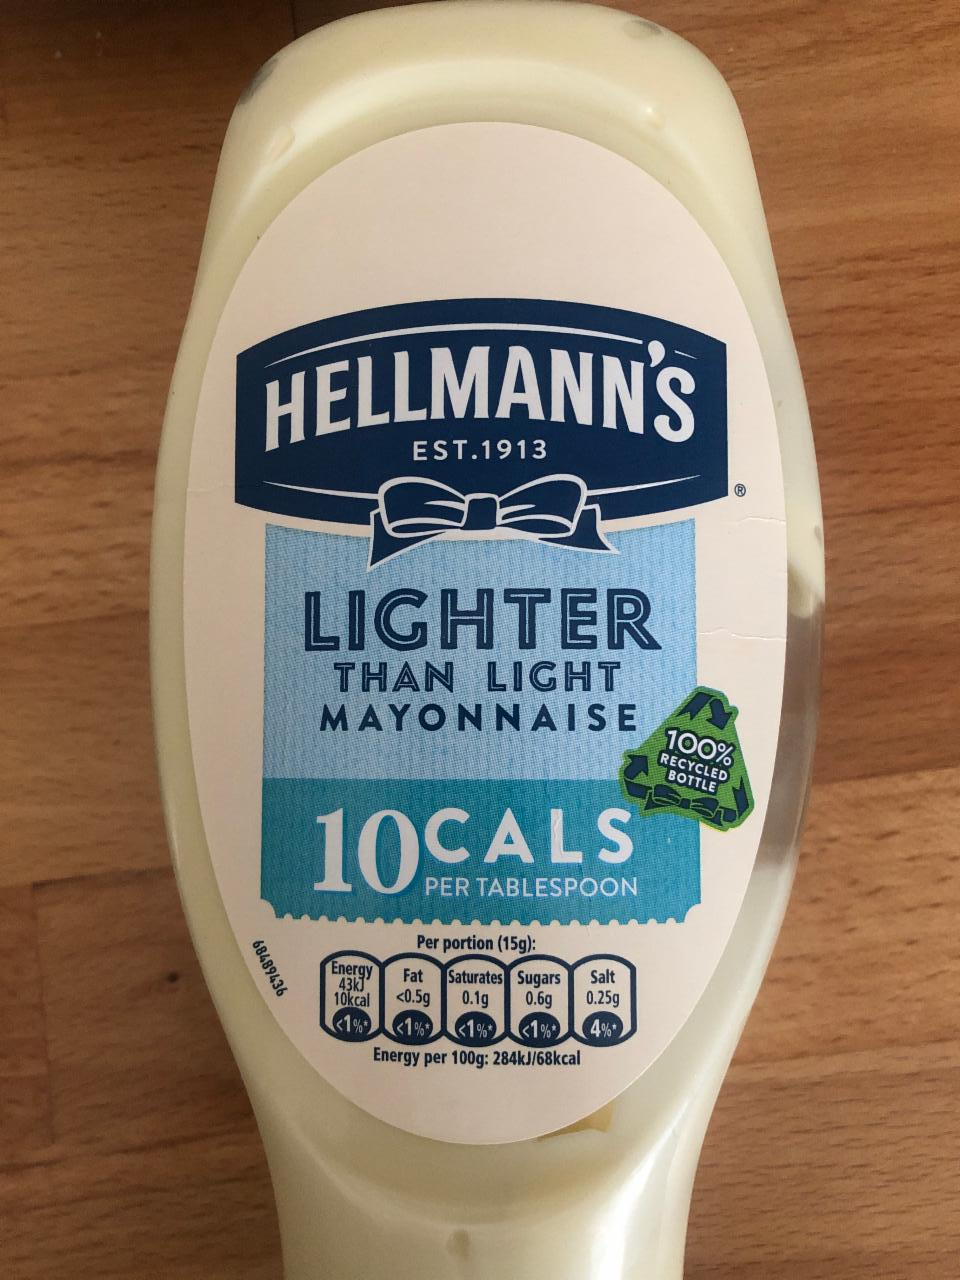 Fotografie - Lighter than light mayonnaise 10 cals Hellmann's